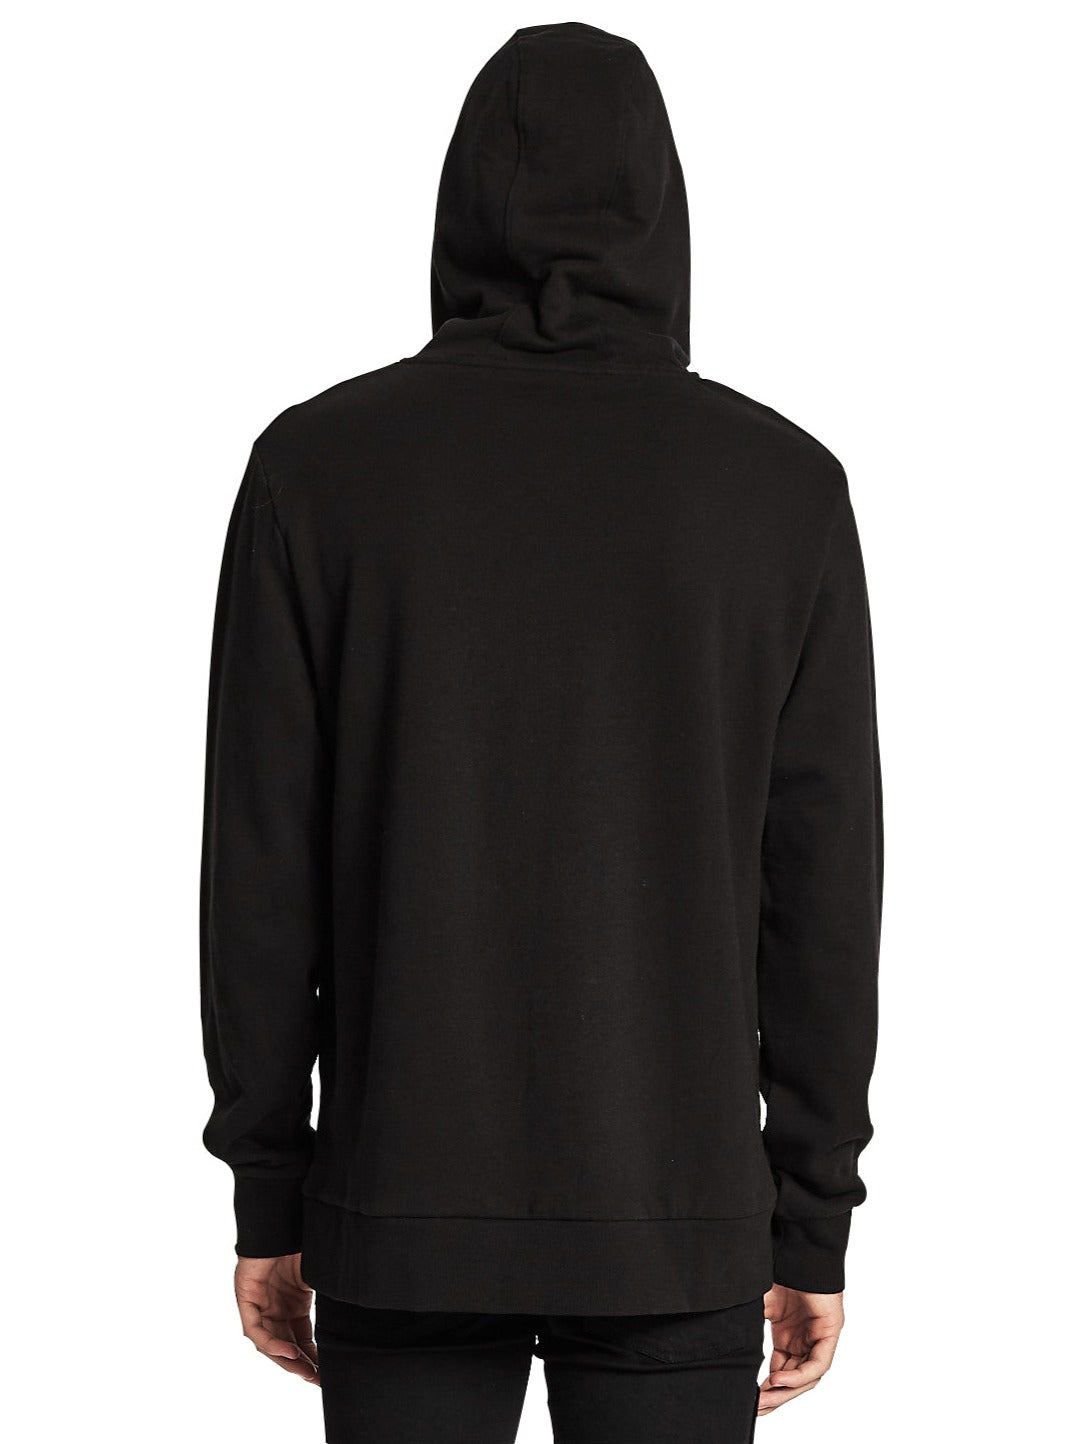 ennoy hoodie TEP black L size eva.gov.co